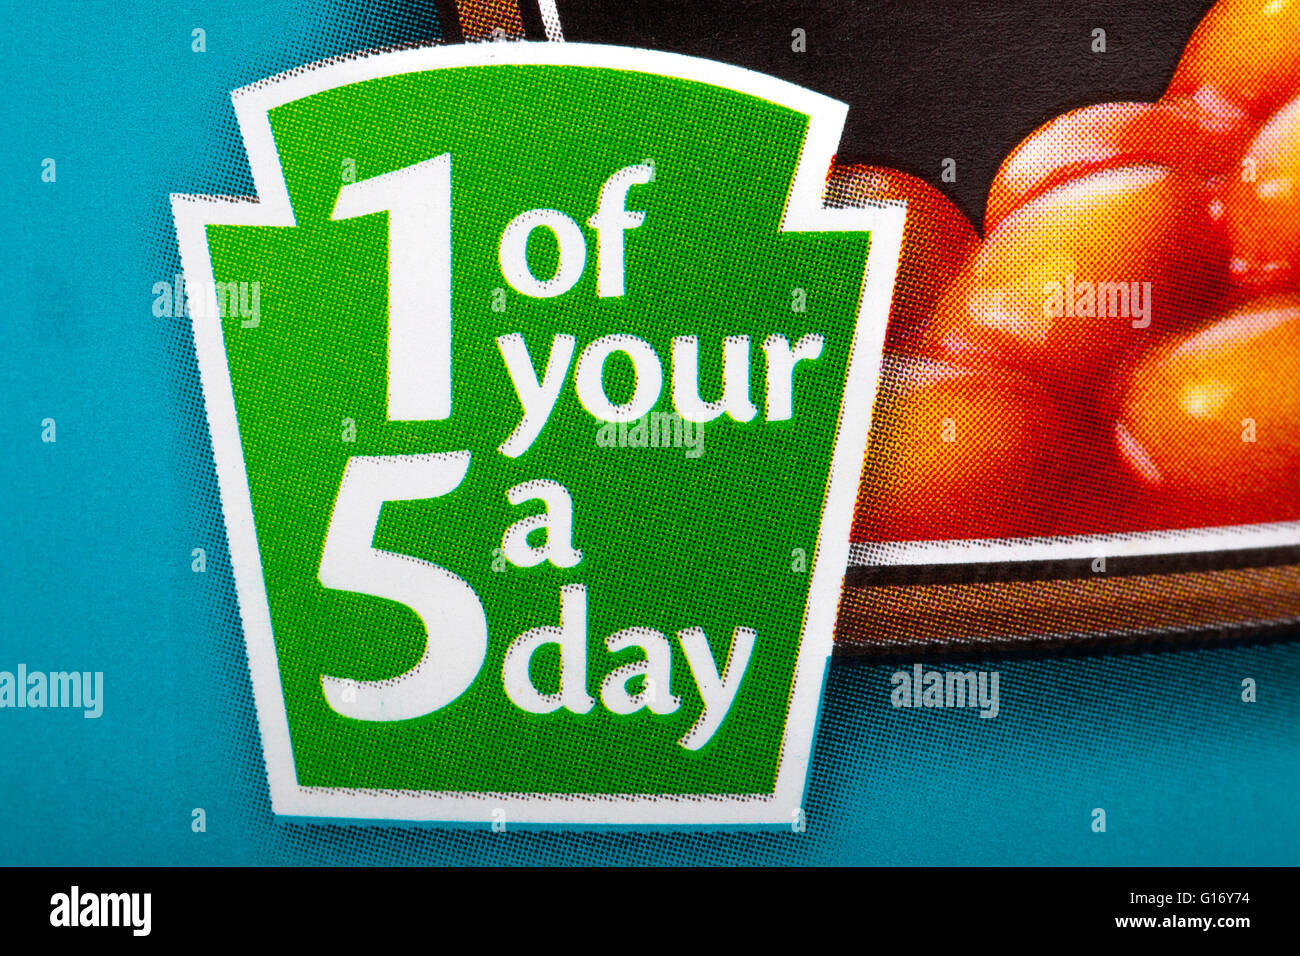 Un segno su una lattina di cibo per informare il consumatore che il contenuto contengono 1 dei vostri 5 raccomandato di frutta e verdura al giorno. Foto Stock